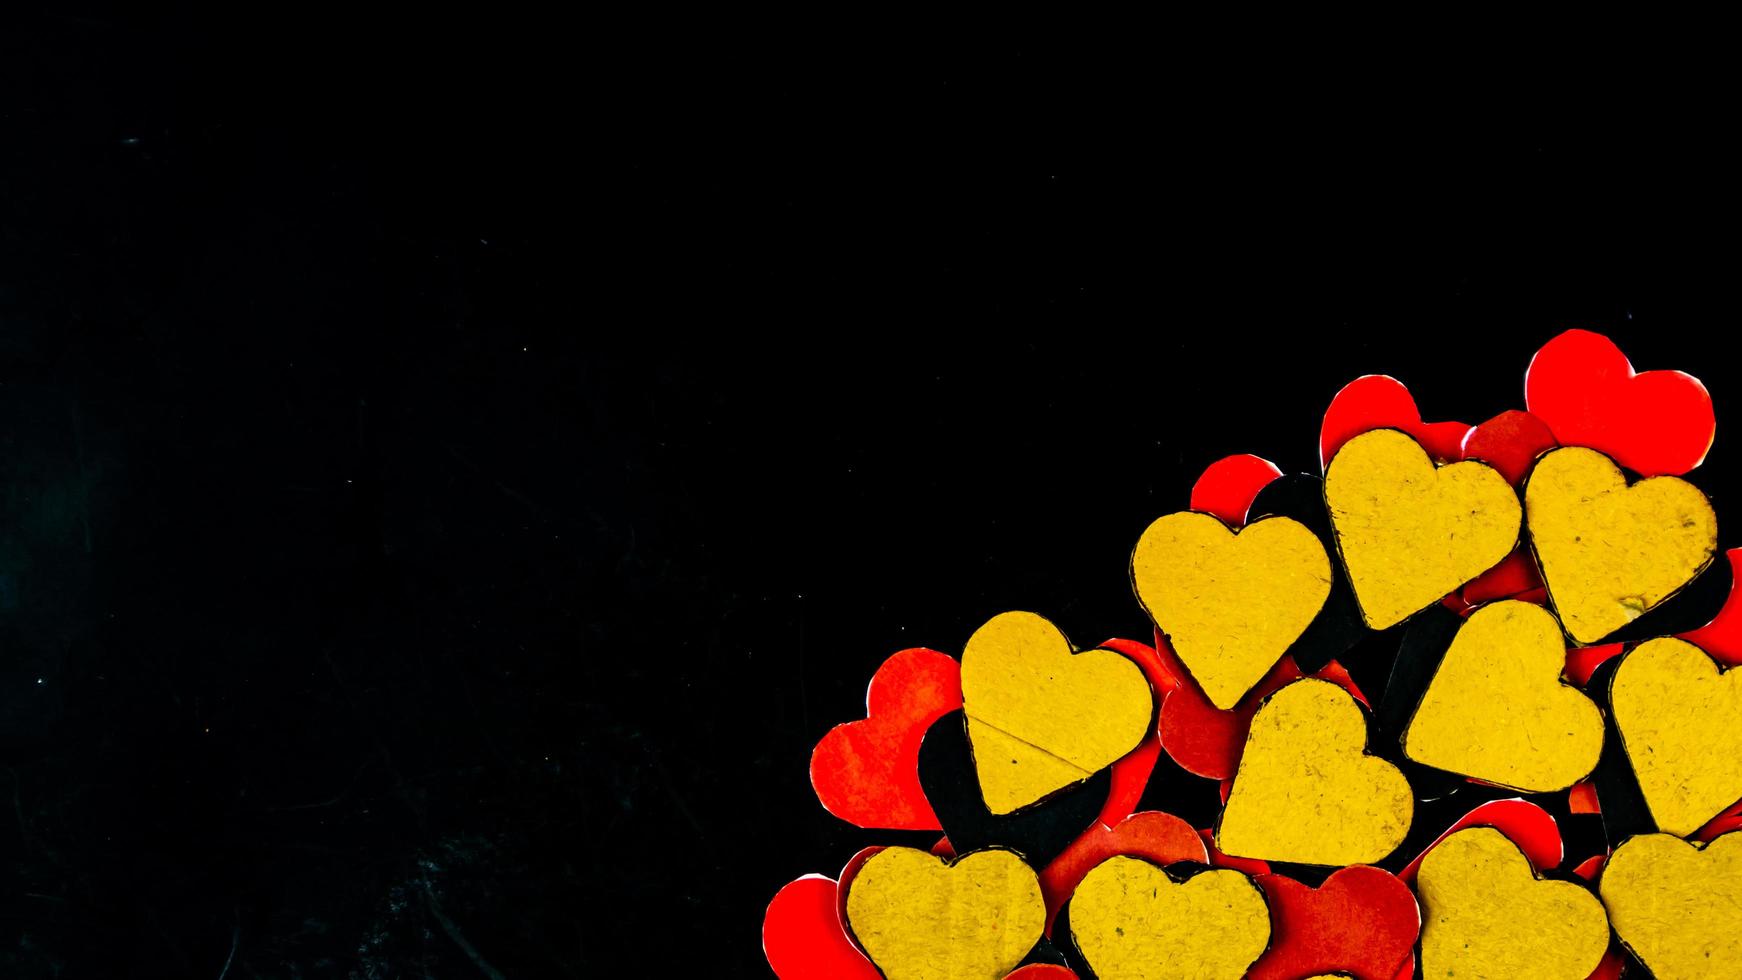 Herz auf schwarzem Hintergrund zum Valentinstag foto